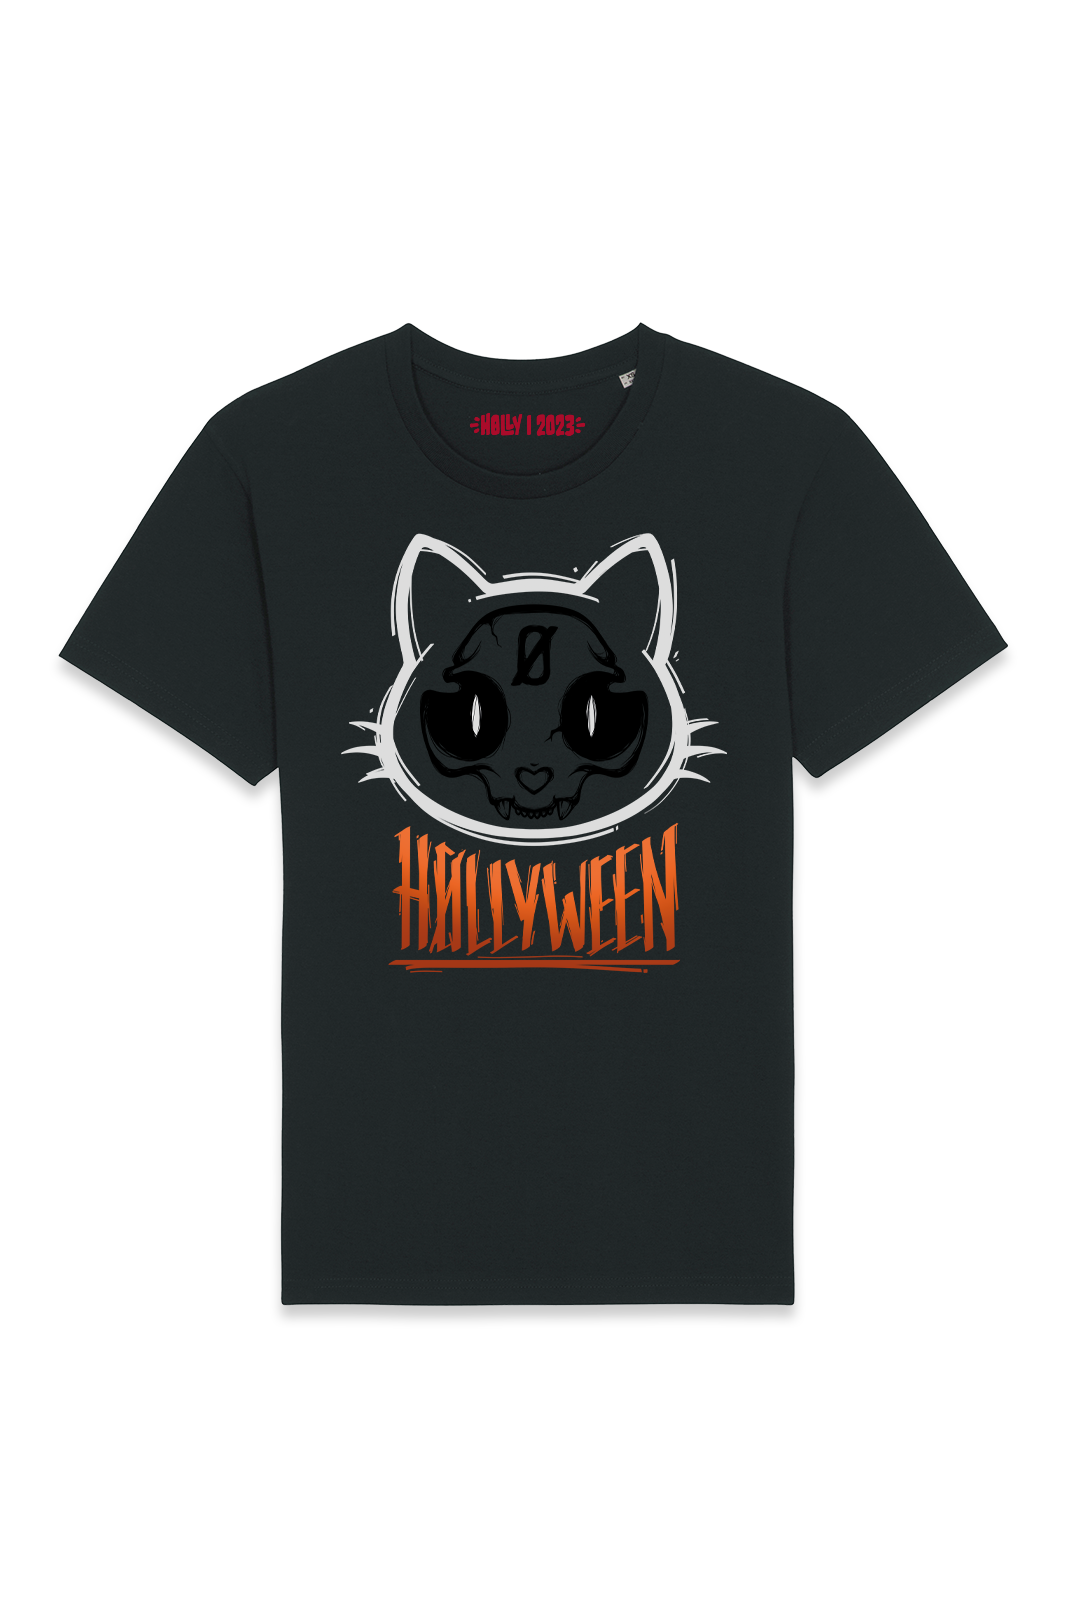 T-Shirt  - H0llyween - Cat